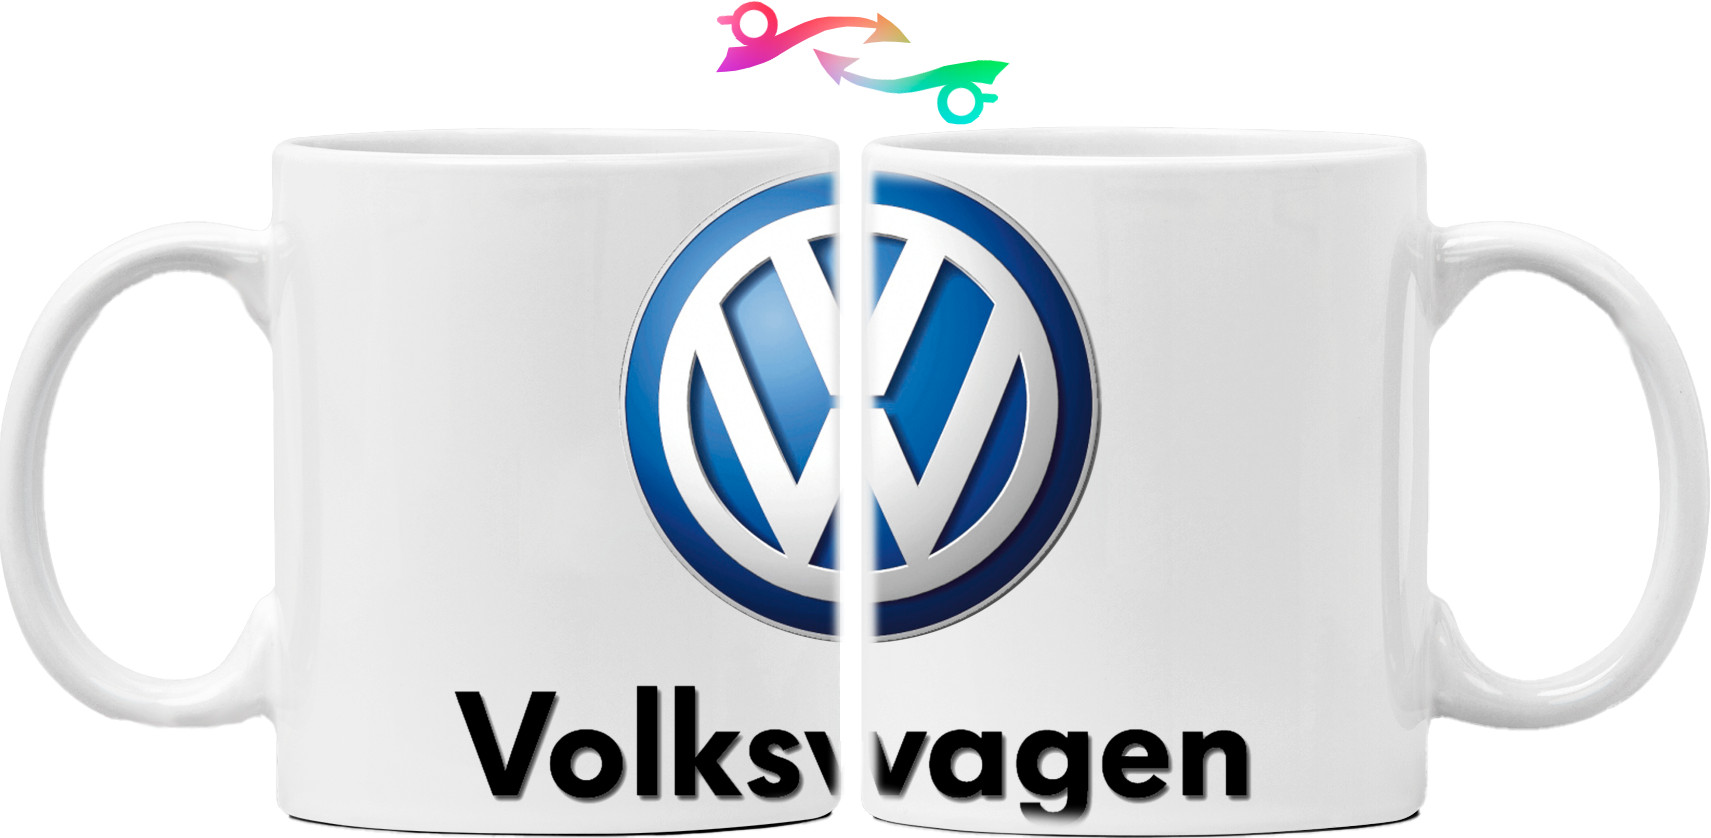 Volkswagen - Logo 2